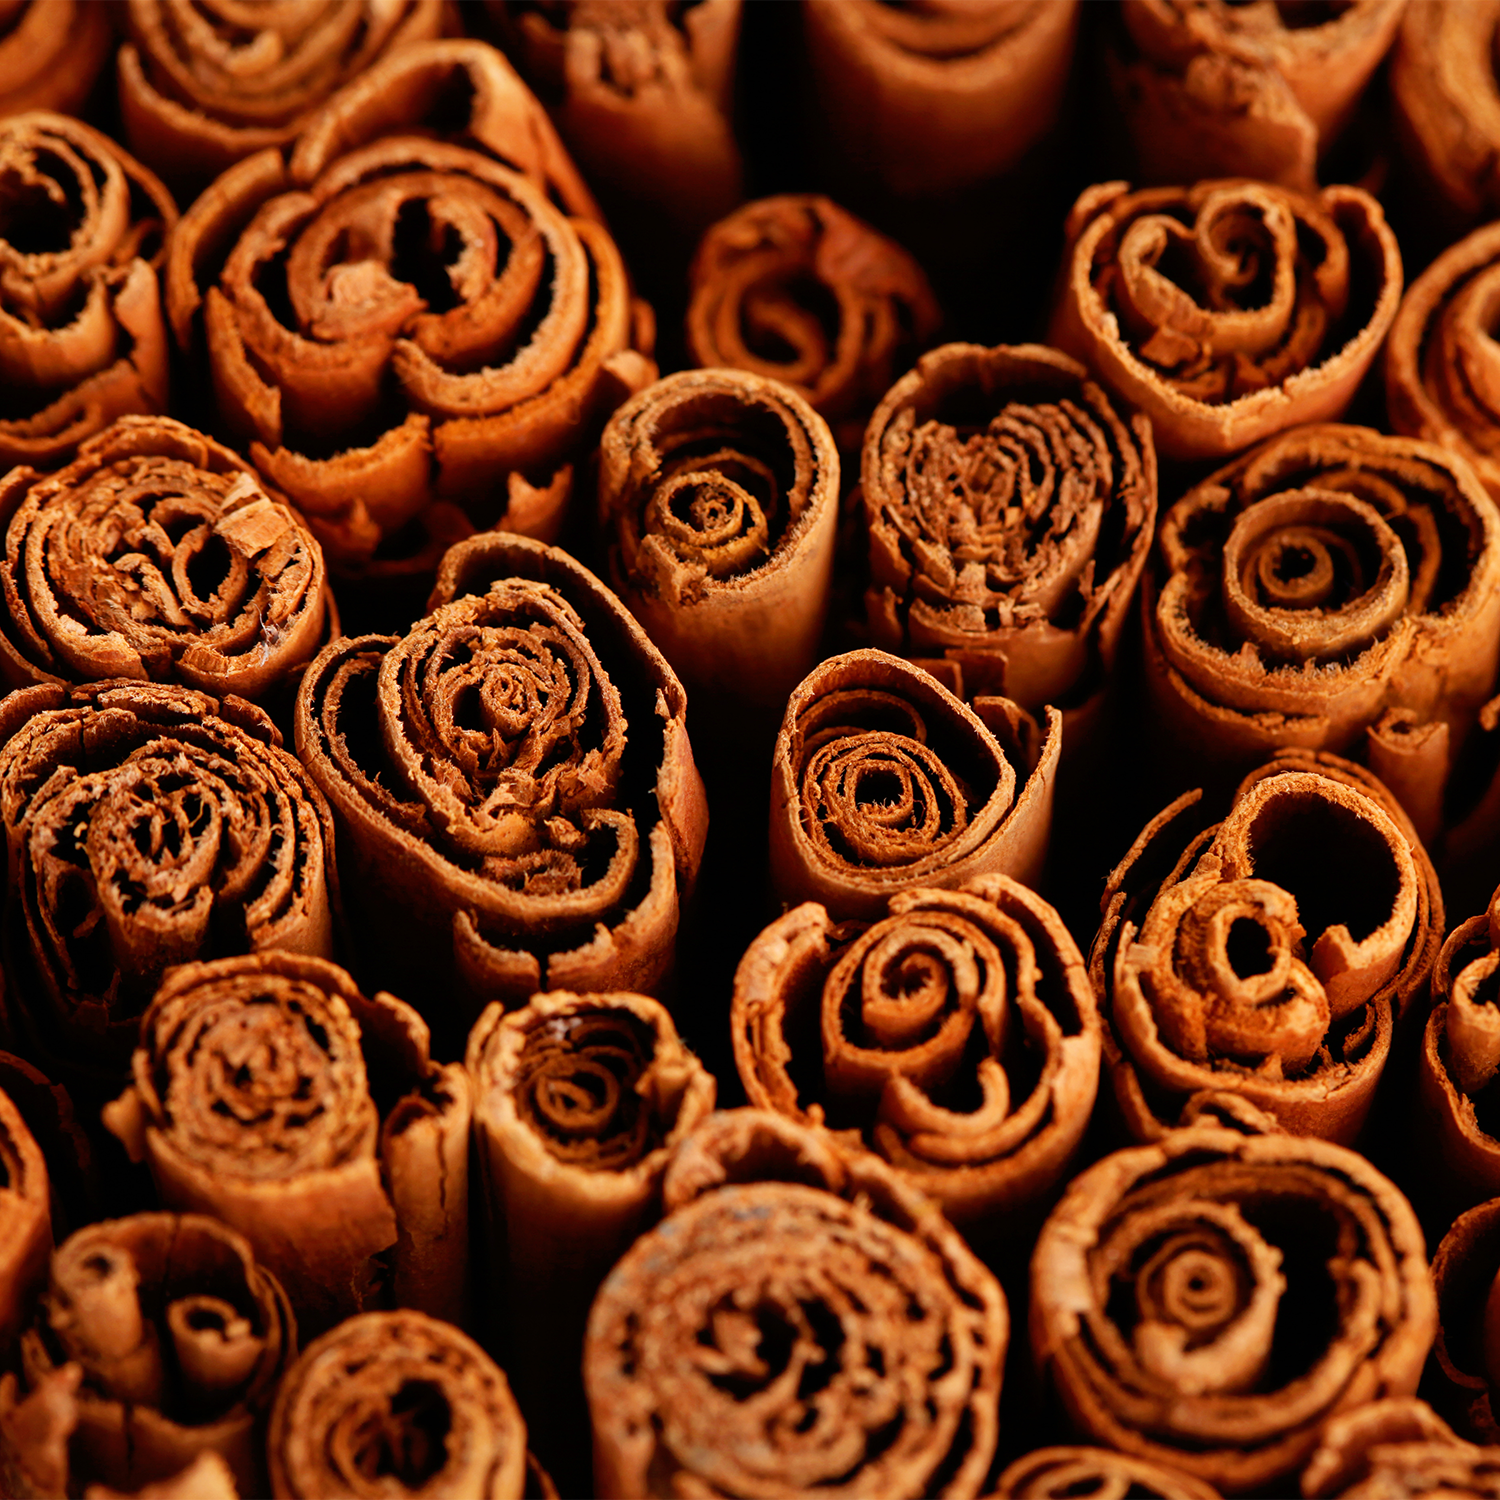 Cinnamon Sticks Classic Wax Melts